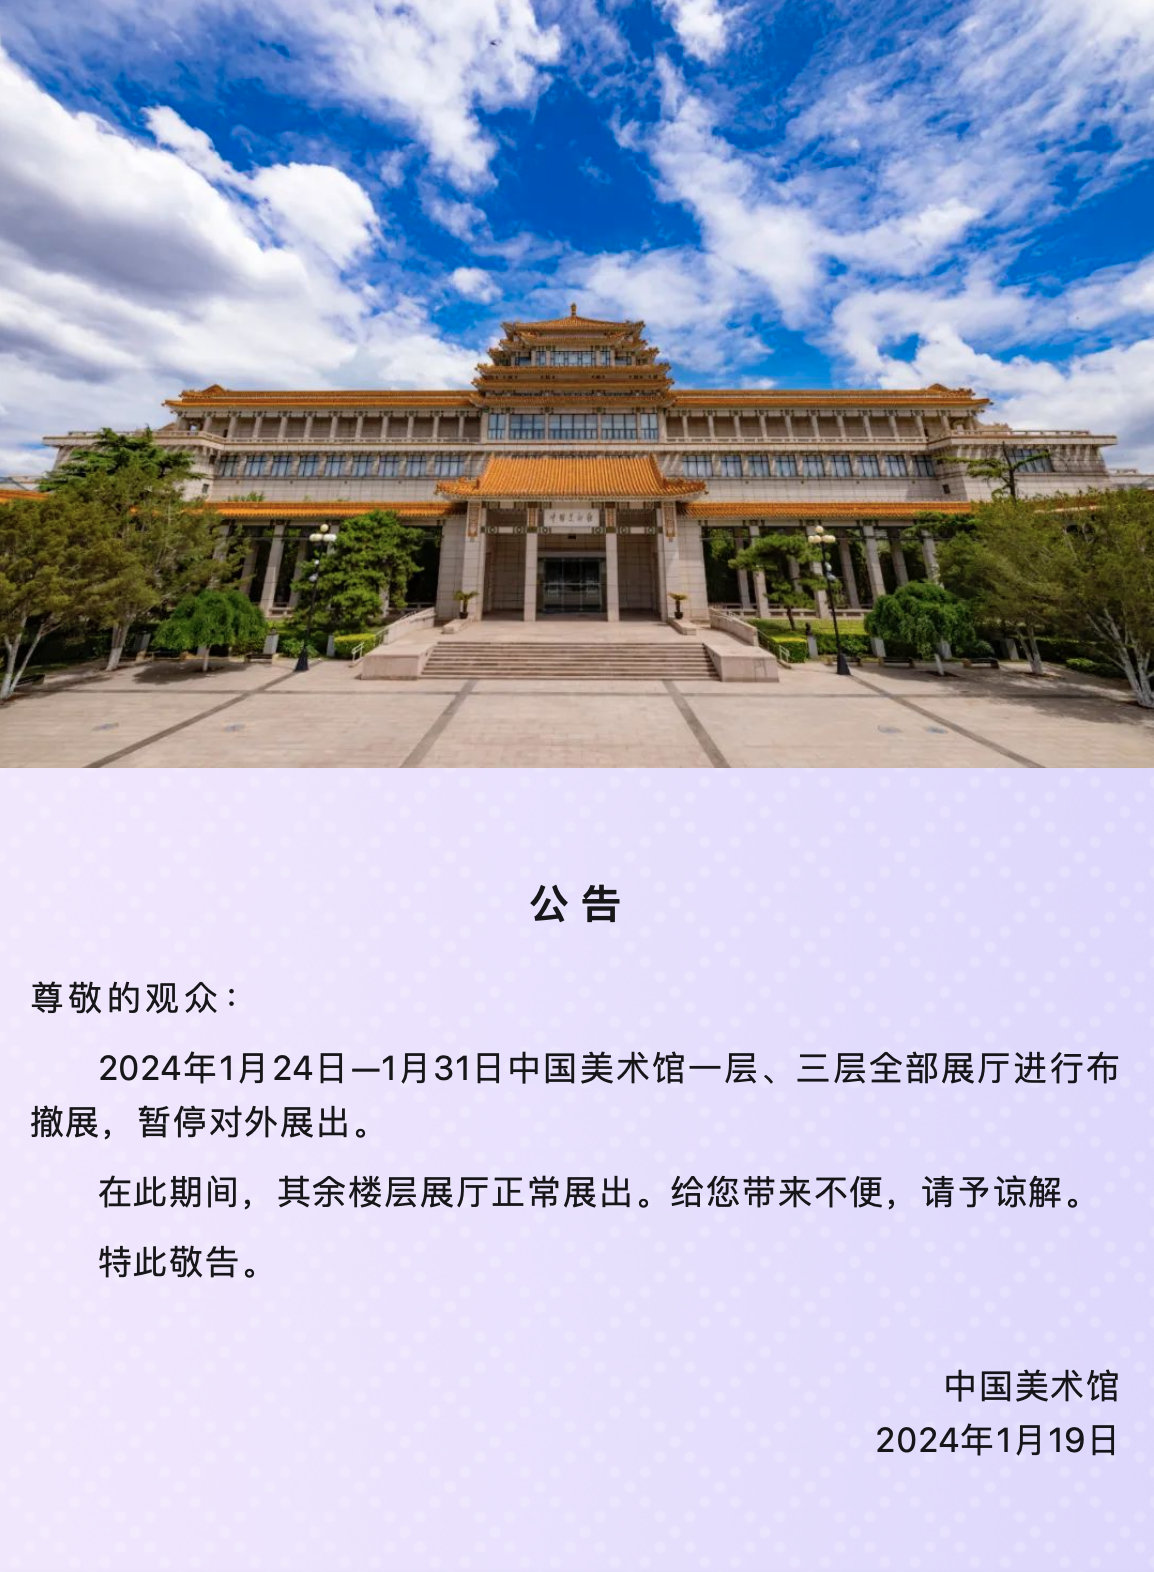 中国美术馆关于部分展厅暂停开放的公告